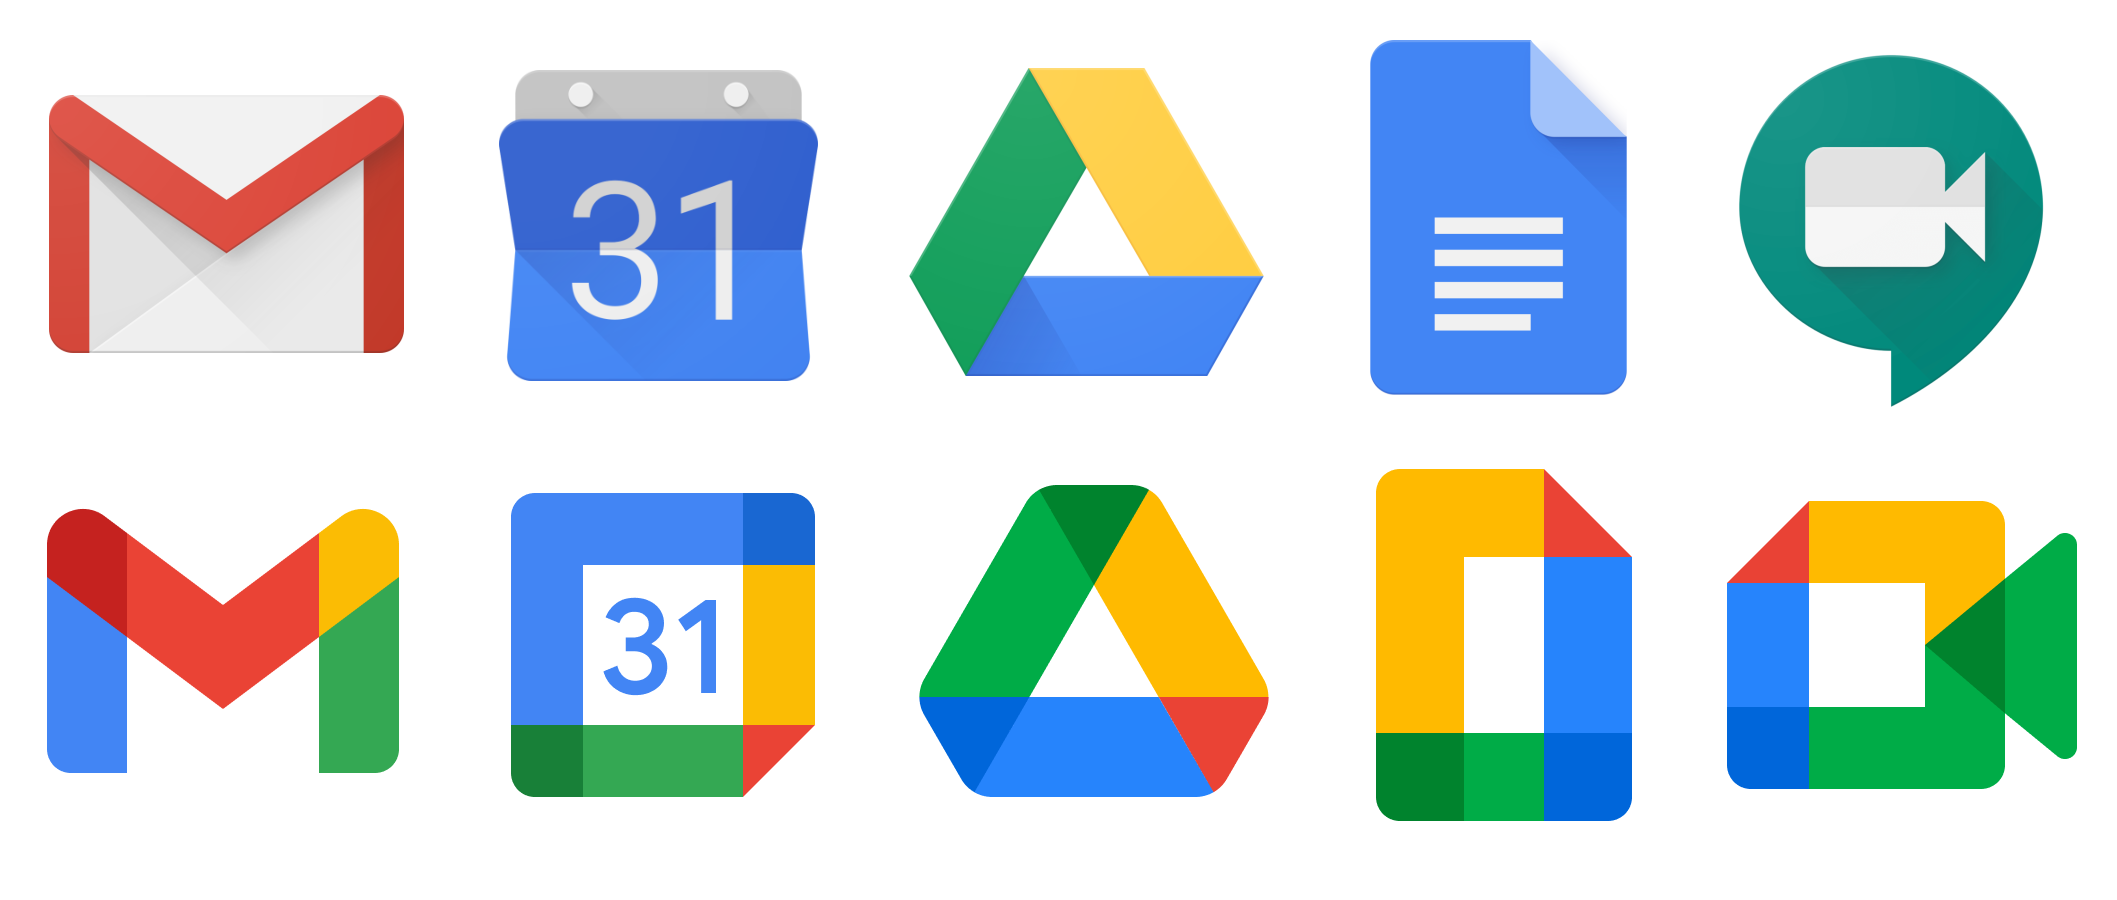 Hình ảnh logos google png đẹp mắt và chuyên nghiệp nhất